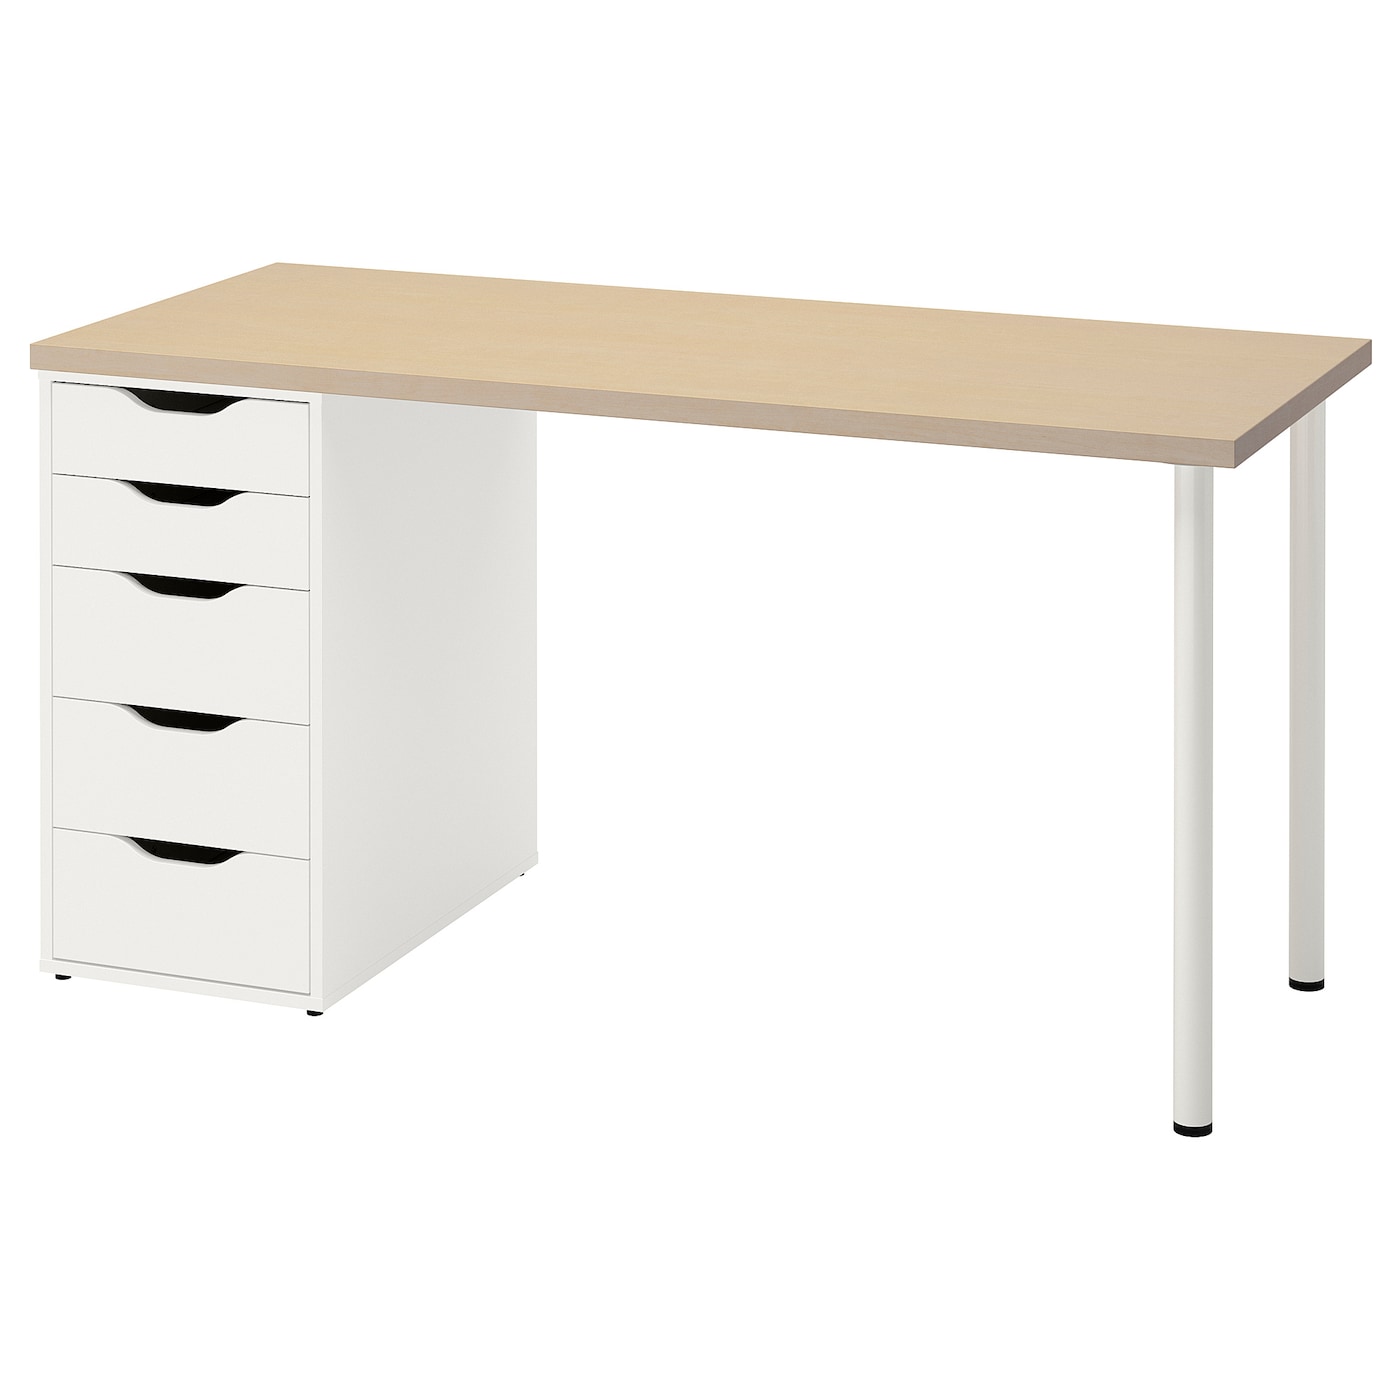 Письменный стол с ящиком - IKEA MÅLSKYTT/MALSKYTT/ALEX, 140x60 см, белый/береза,  МОЛСКЮТТ/АЛЕКС ИКЕА